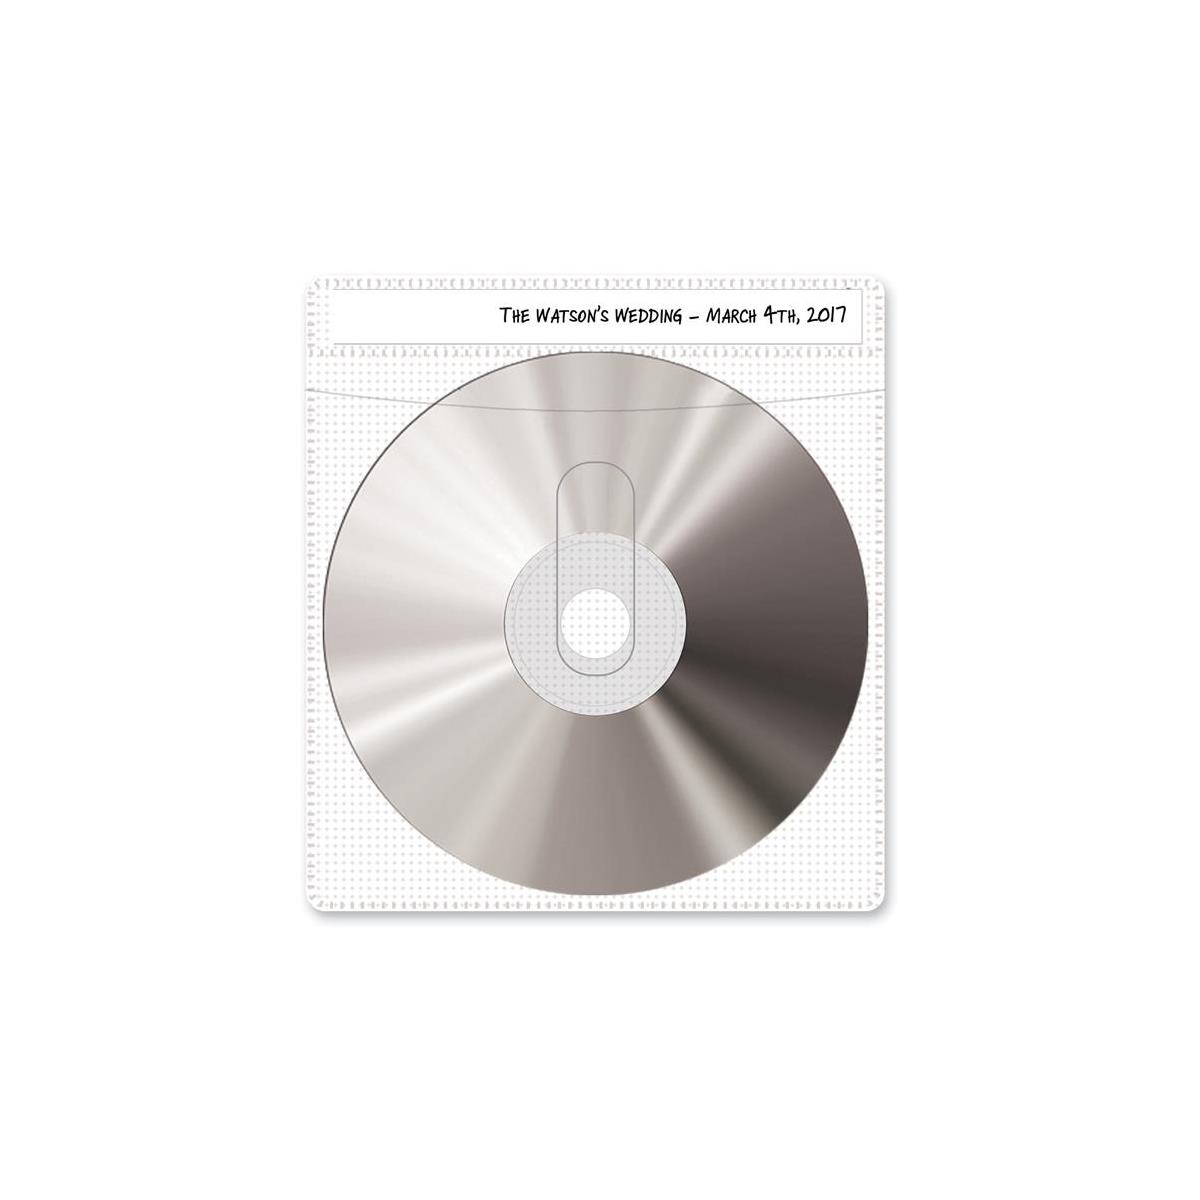 Image of Print File CD or DVD Sleeves